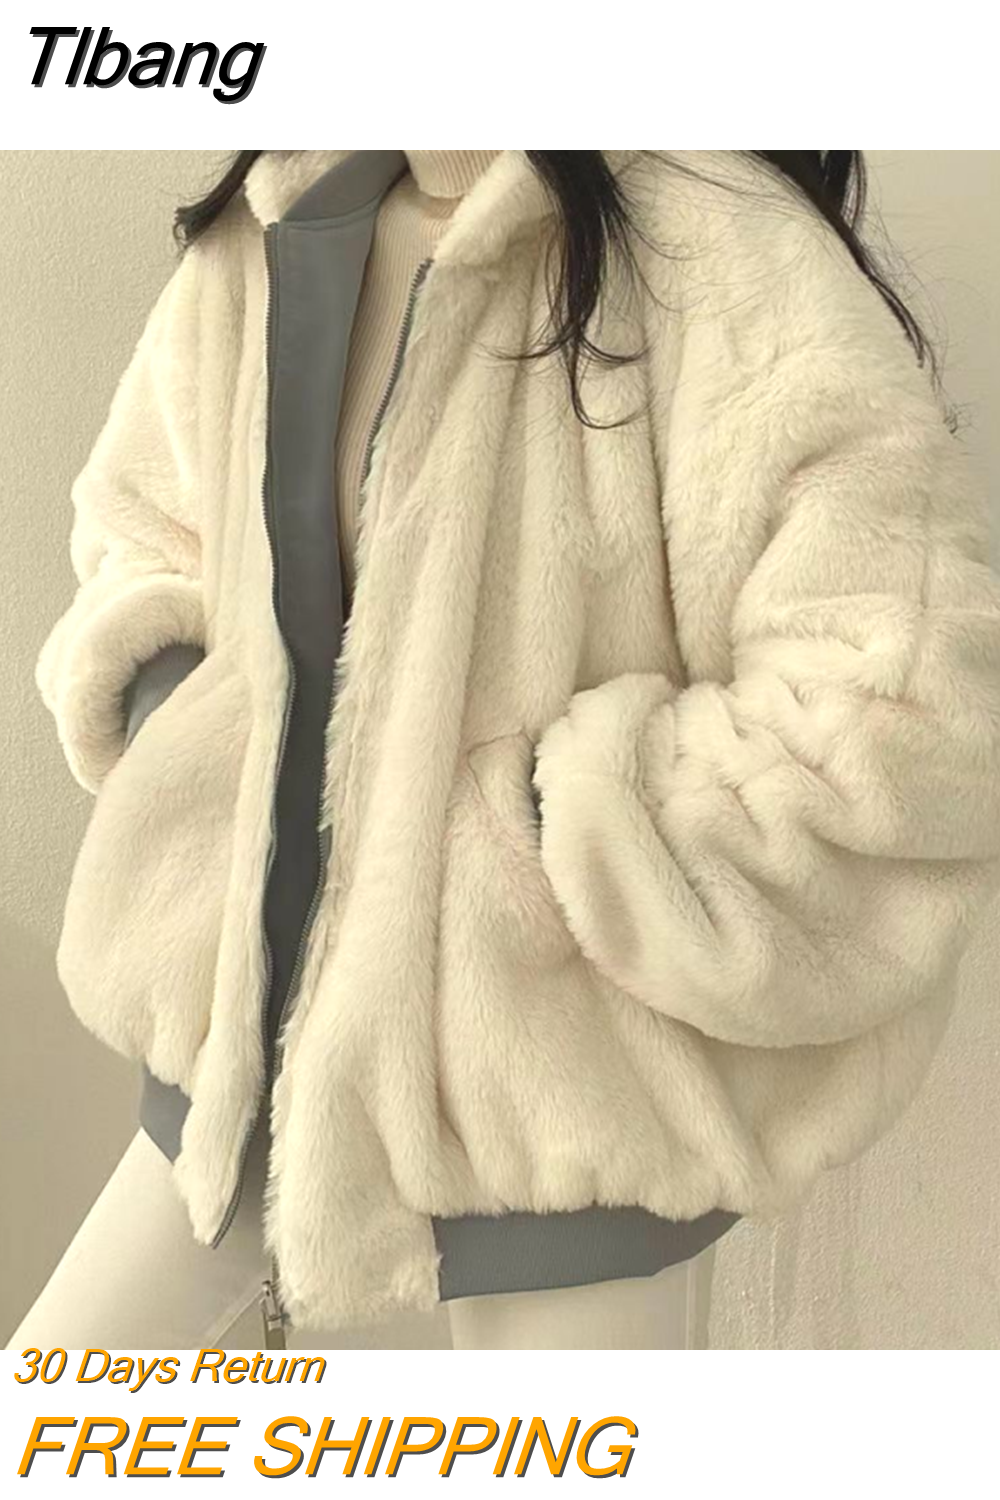 Tlbang Two-Sided Wear Lambswool Cotton Jacket South Korea Plus Down Women'S Jacket Winter New Zipper Hooded Cotton Jacket Y2k